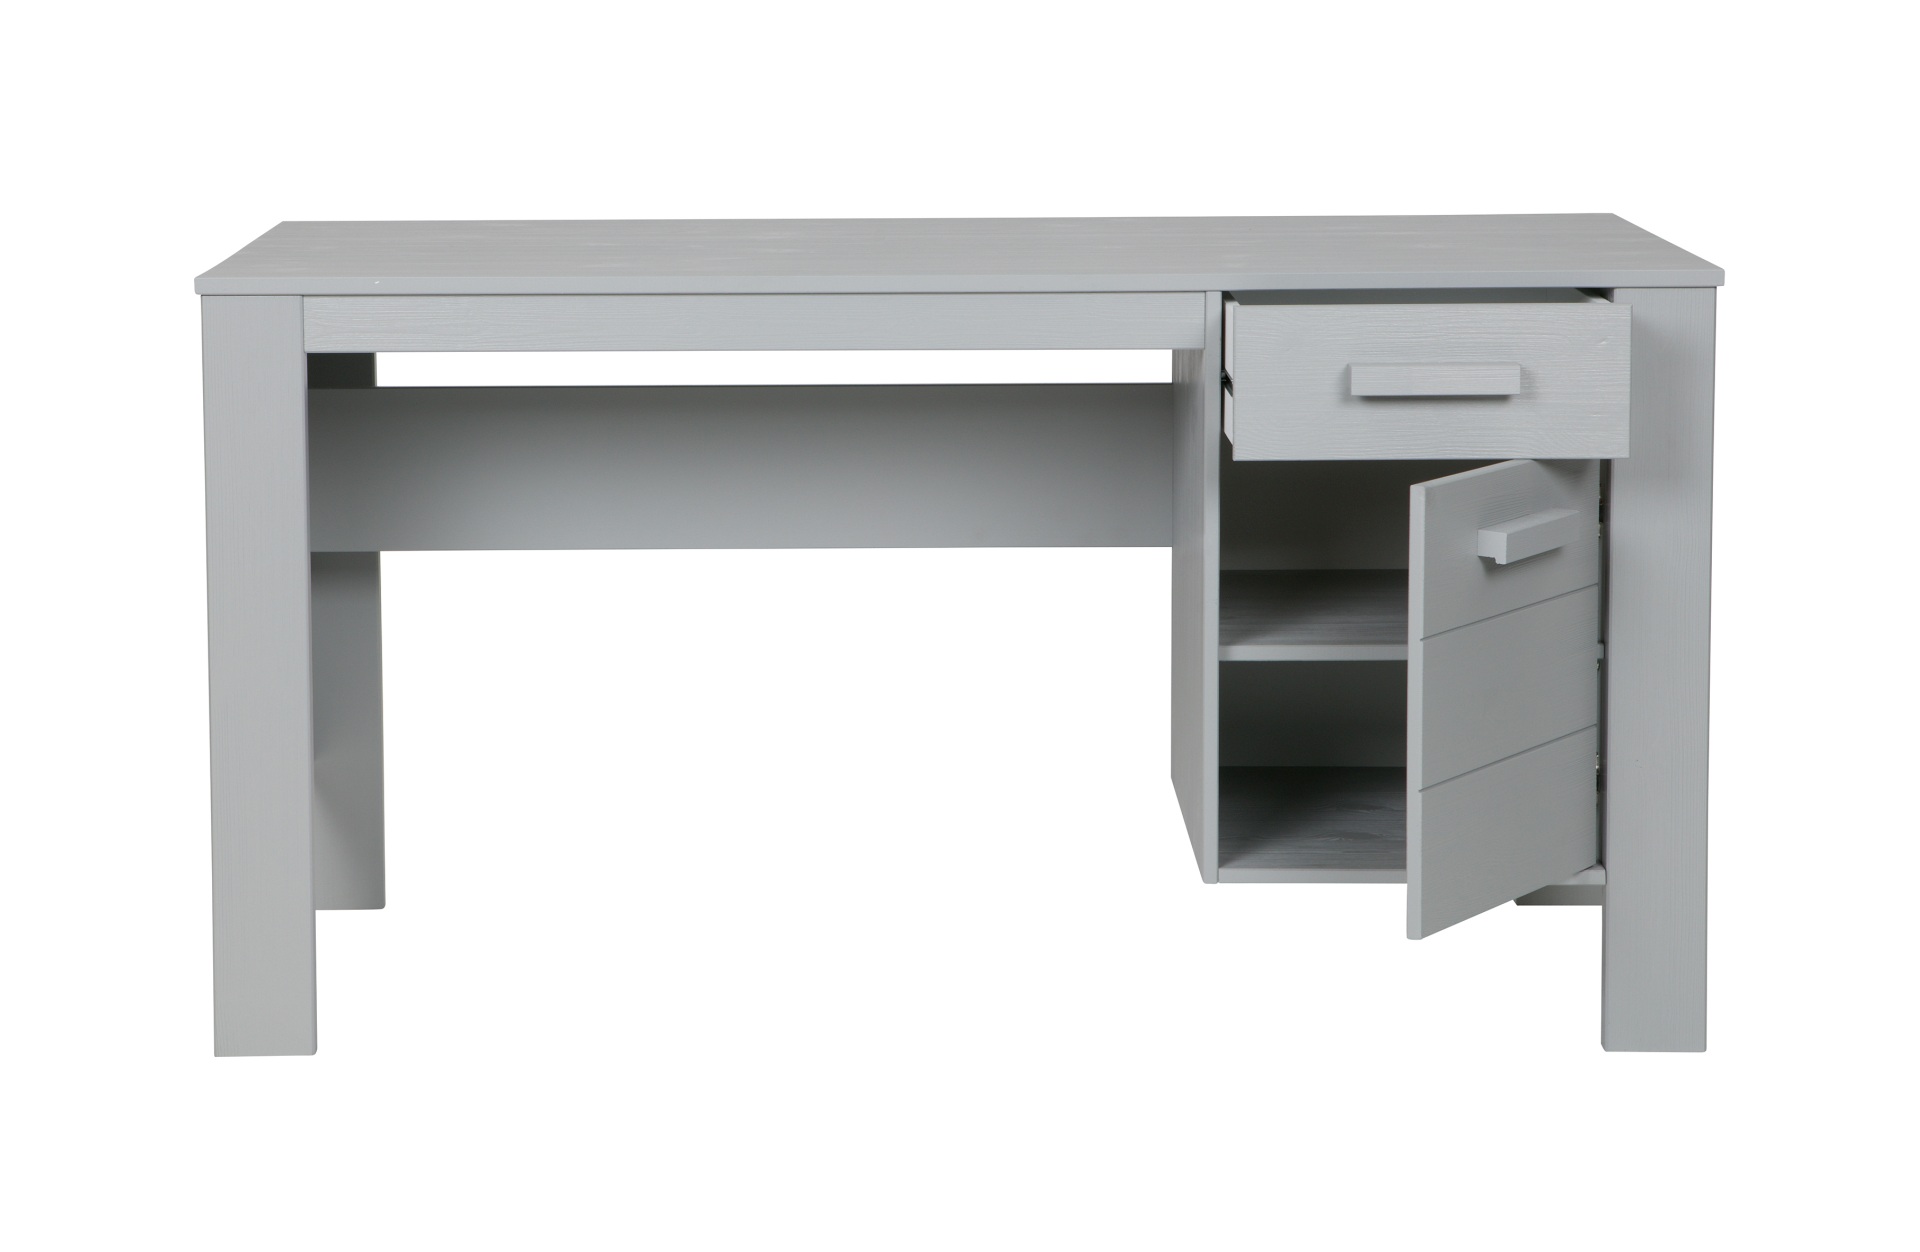 Der Schreibtisch Dennis wurde aus Kiefernholz gefertigt und besitzt einen hellgrauen Farbton. Der Tisch verfügt über eine Schublade und eine Tür für Stauraum.